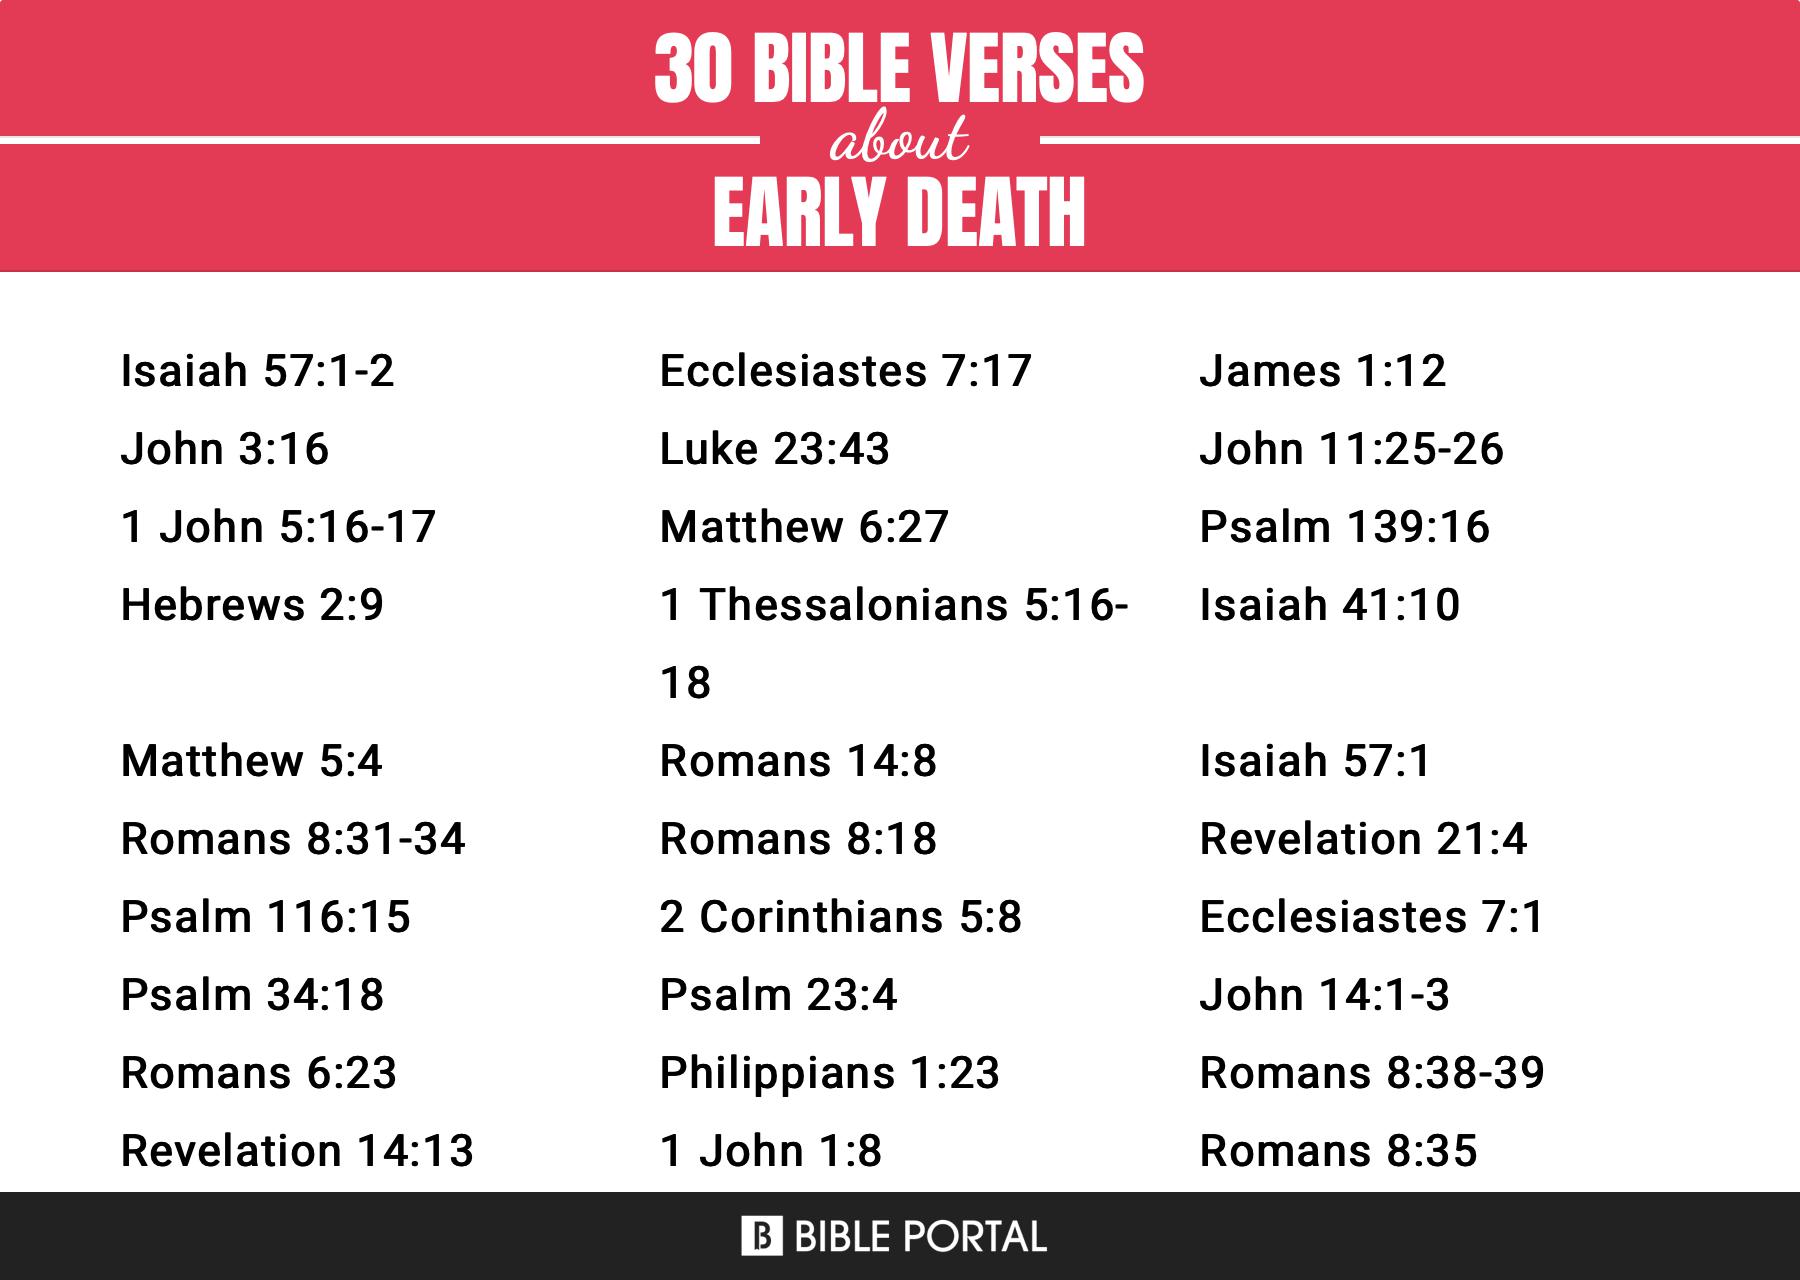 10 importantes versículos bíblicos sobre la muerte prematura